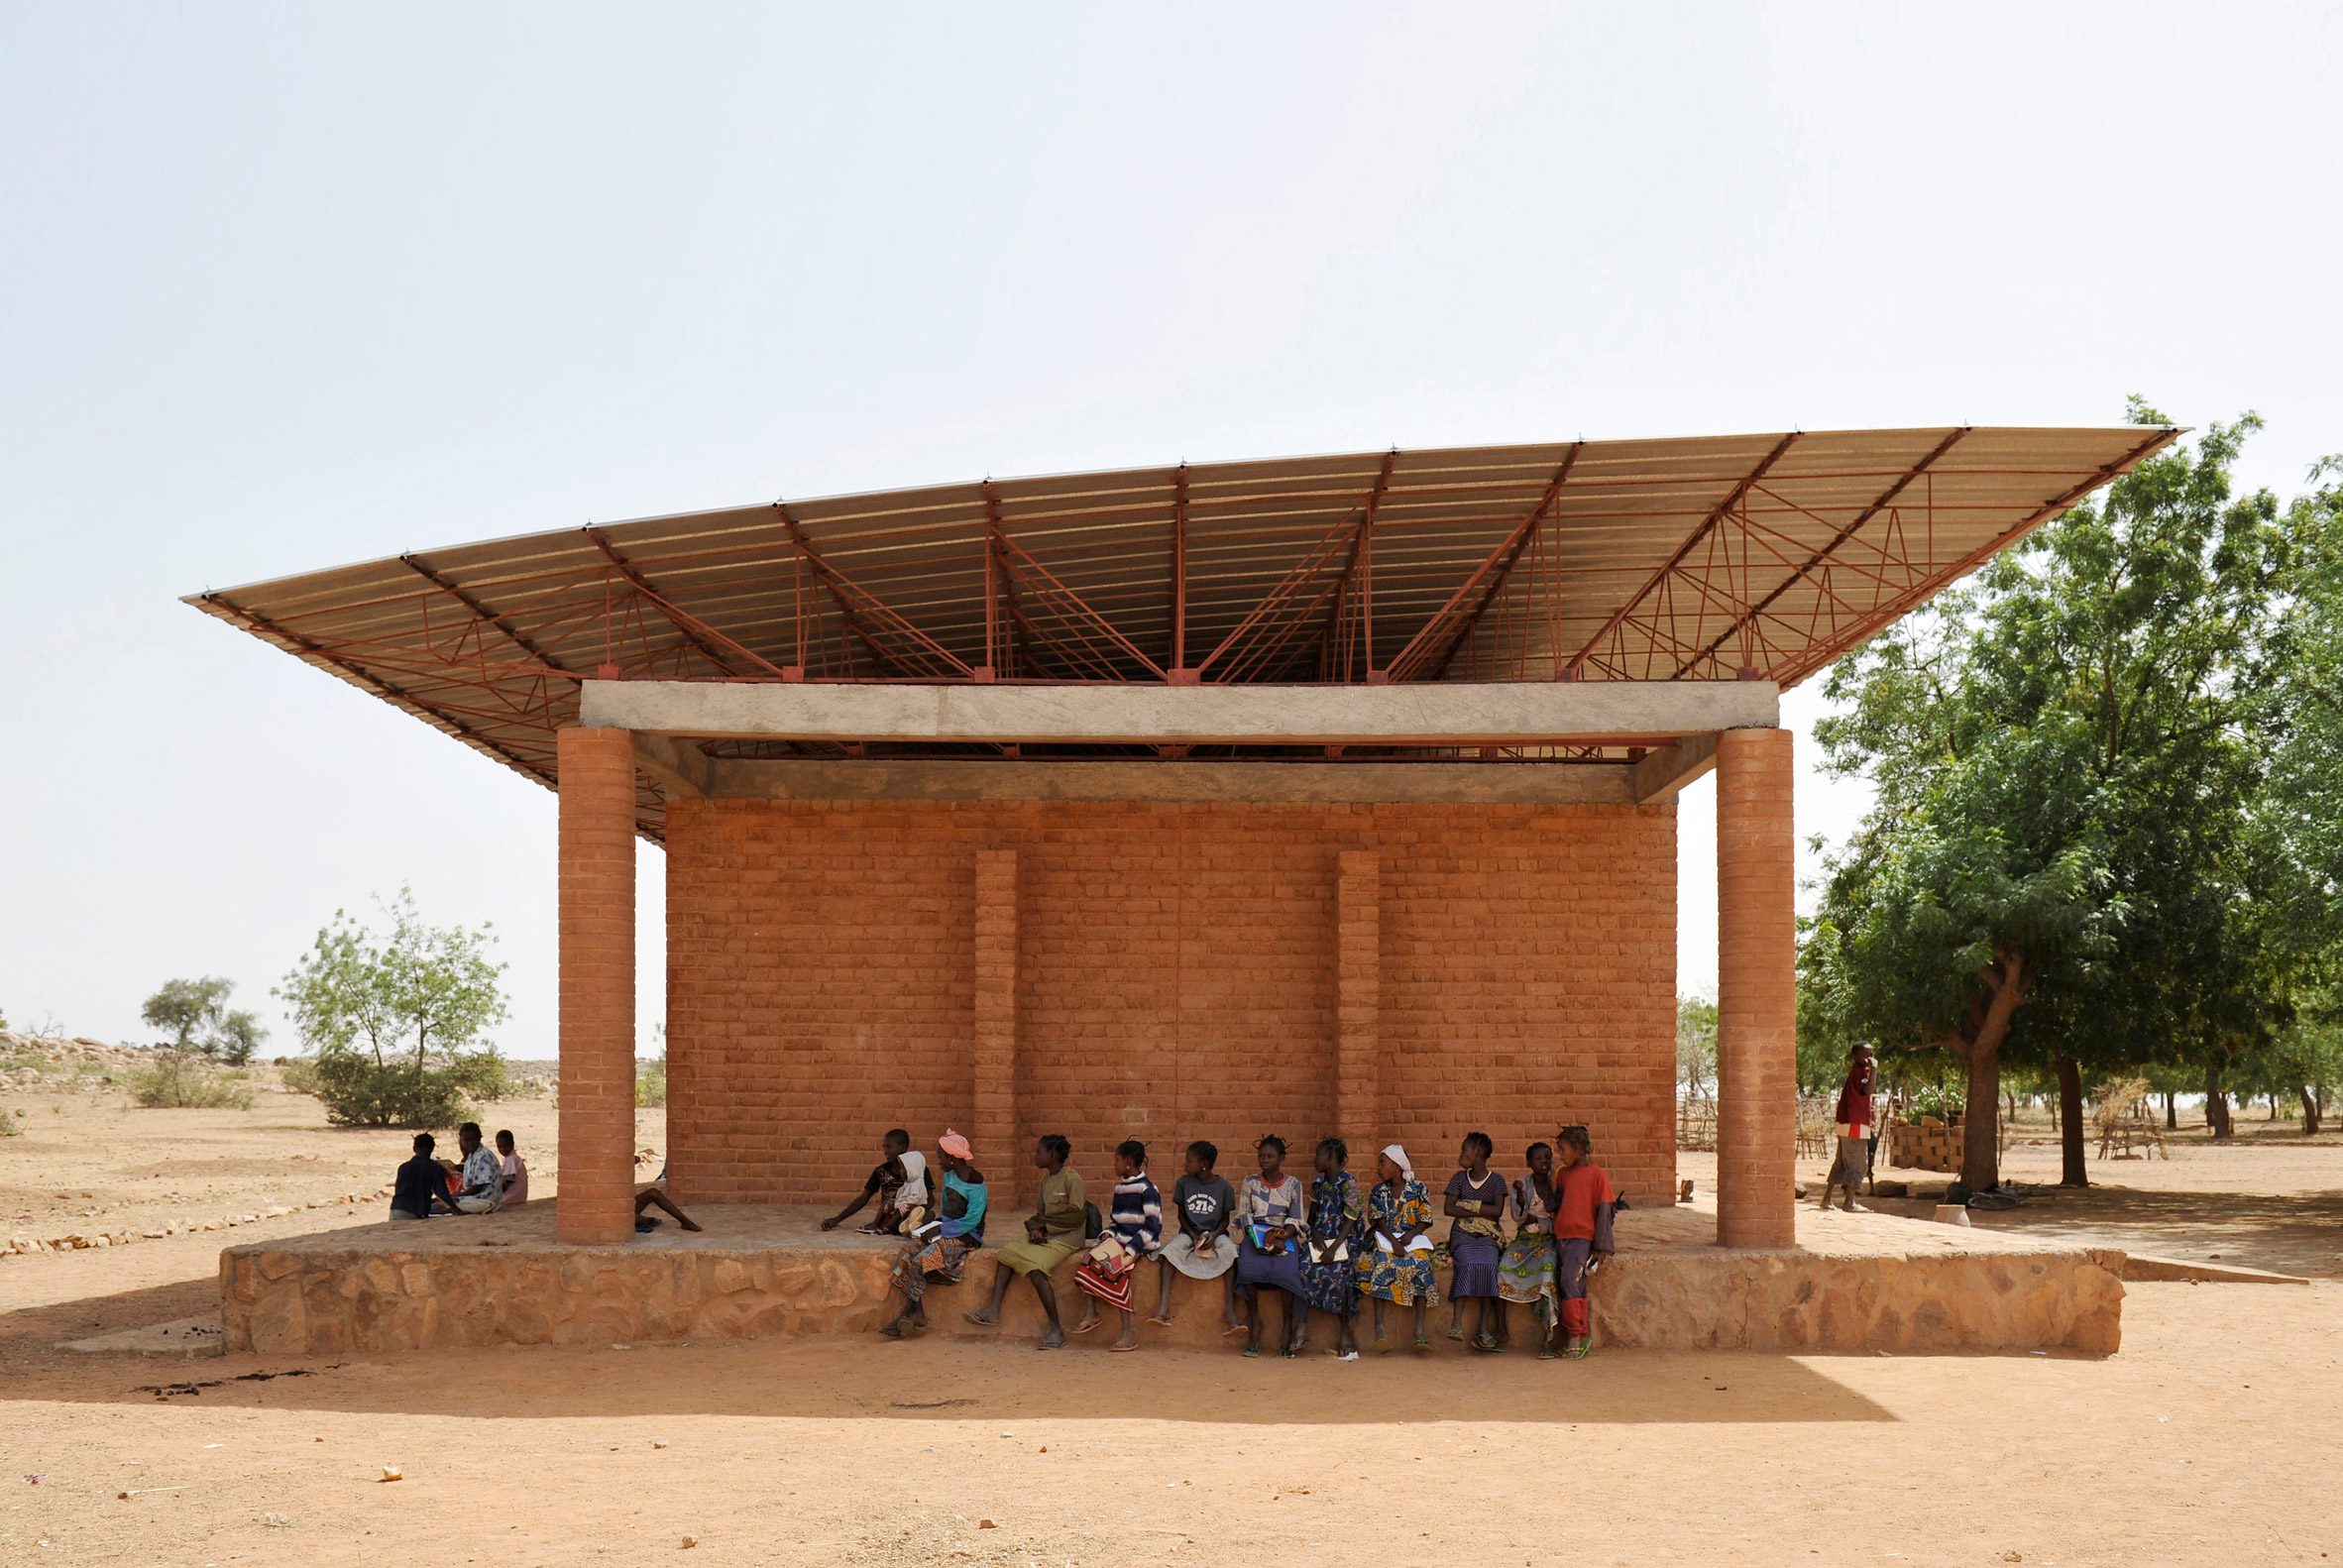 Gando Primary School in Burkina Faso designed by Diébédo Francis Kéré